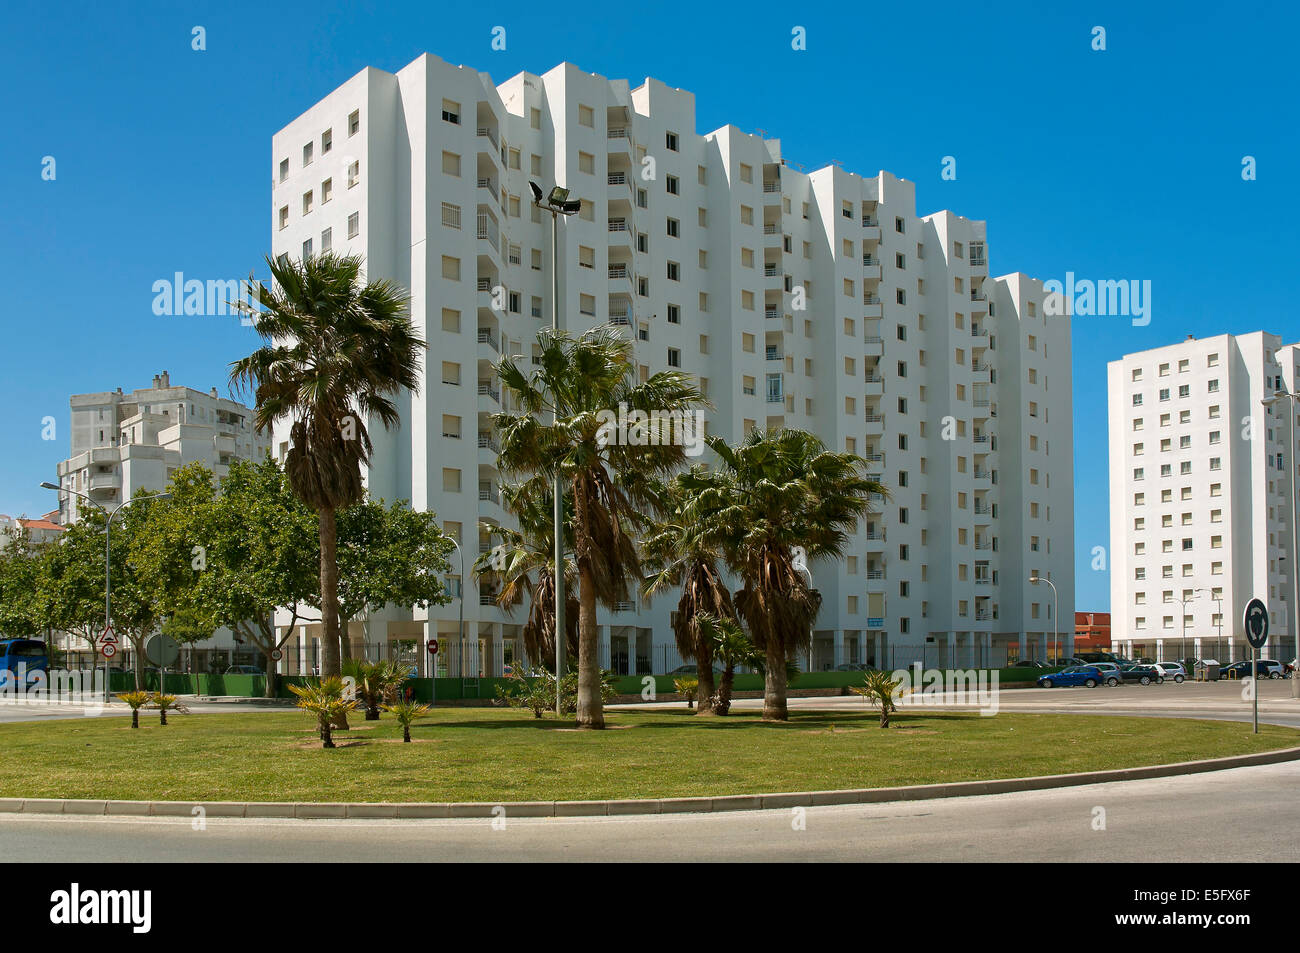 Bloques de apartamentos, El Puerto de Santa Maria, provincia de Cádiz, región de Andalucía, España, Europa Foto de stock